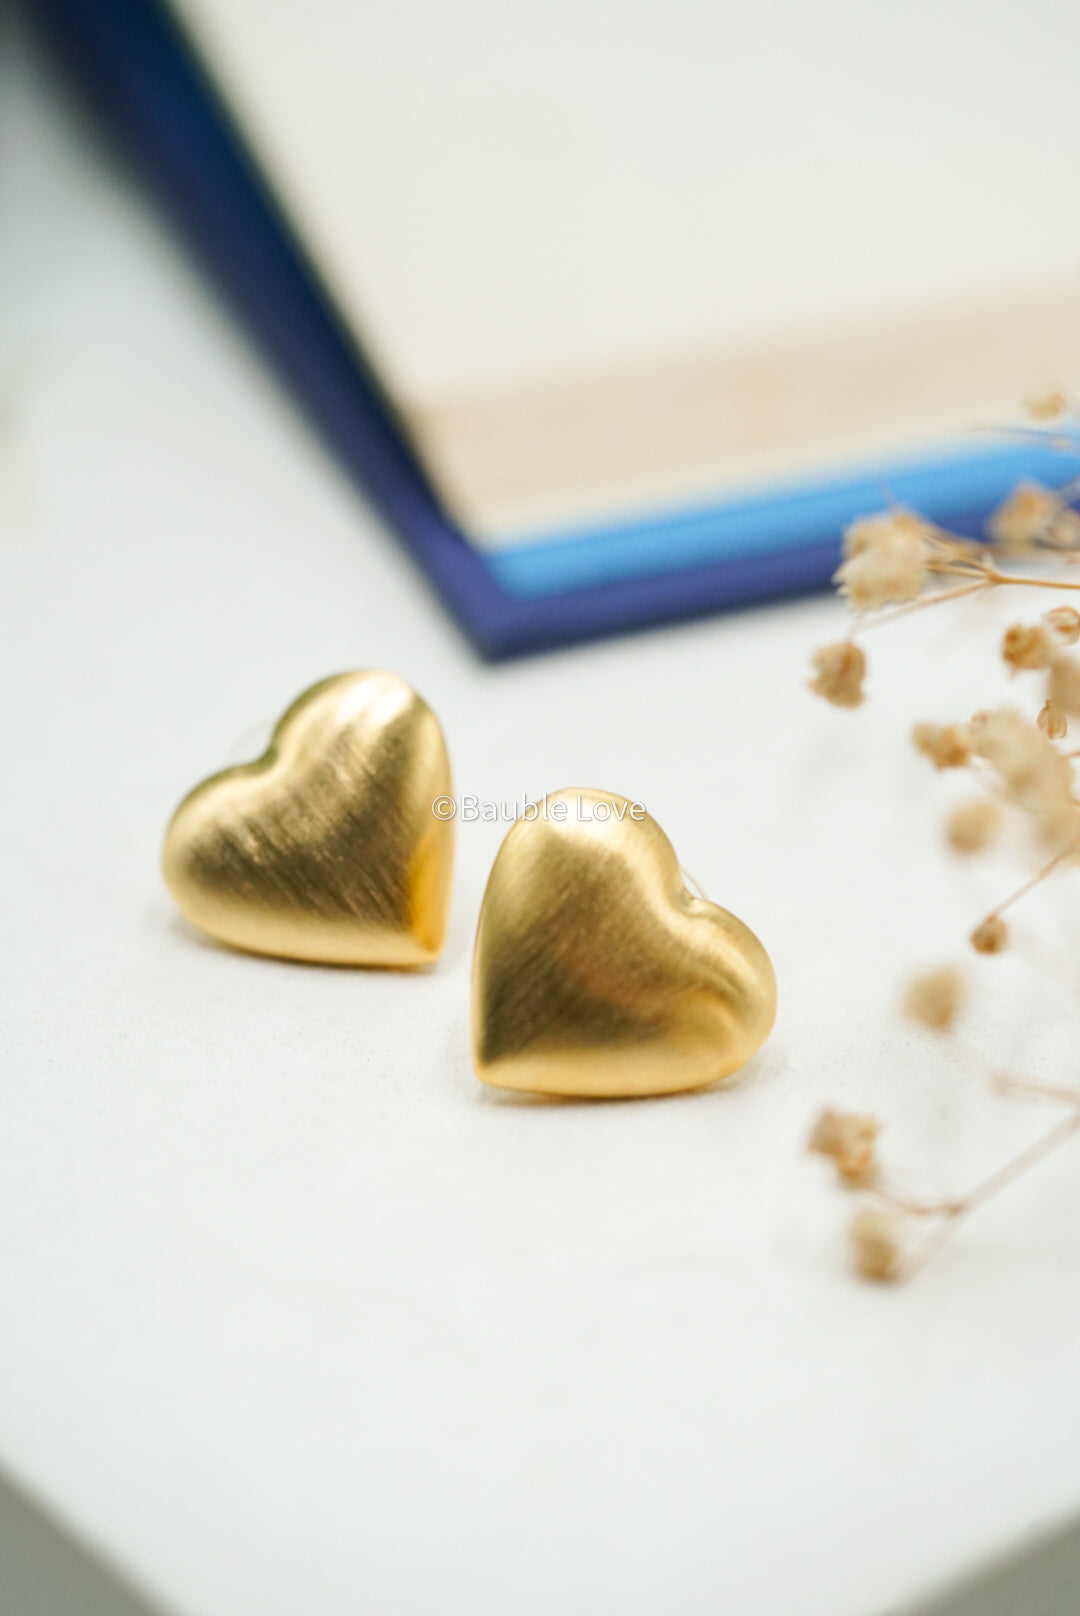 Two Hearts Earrings